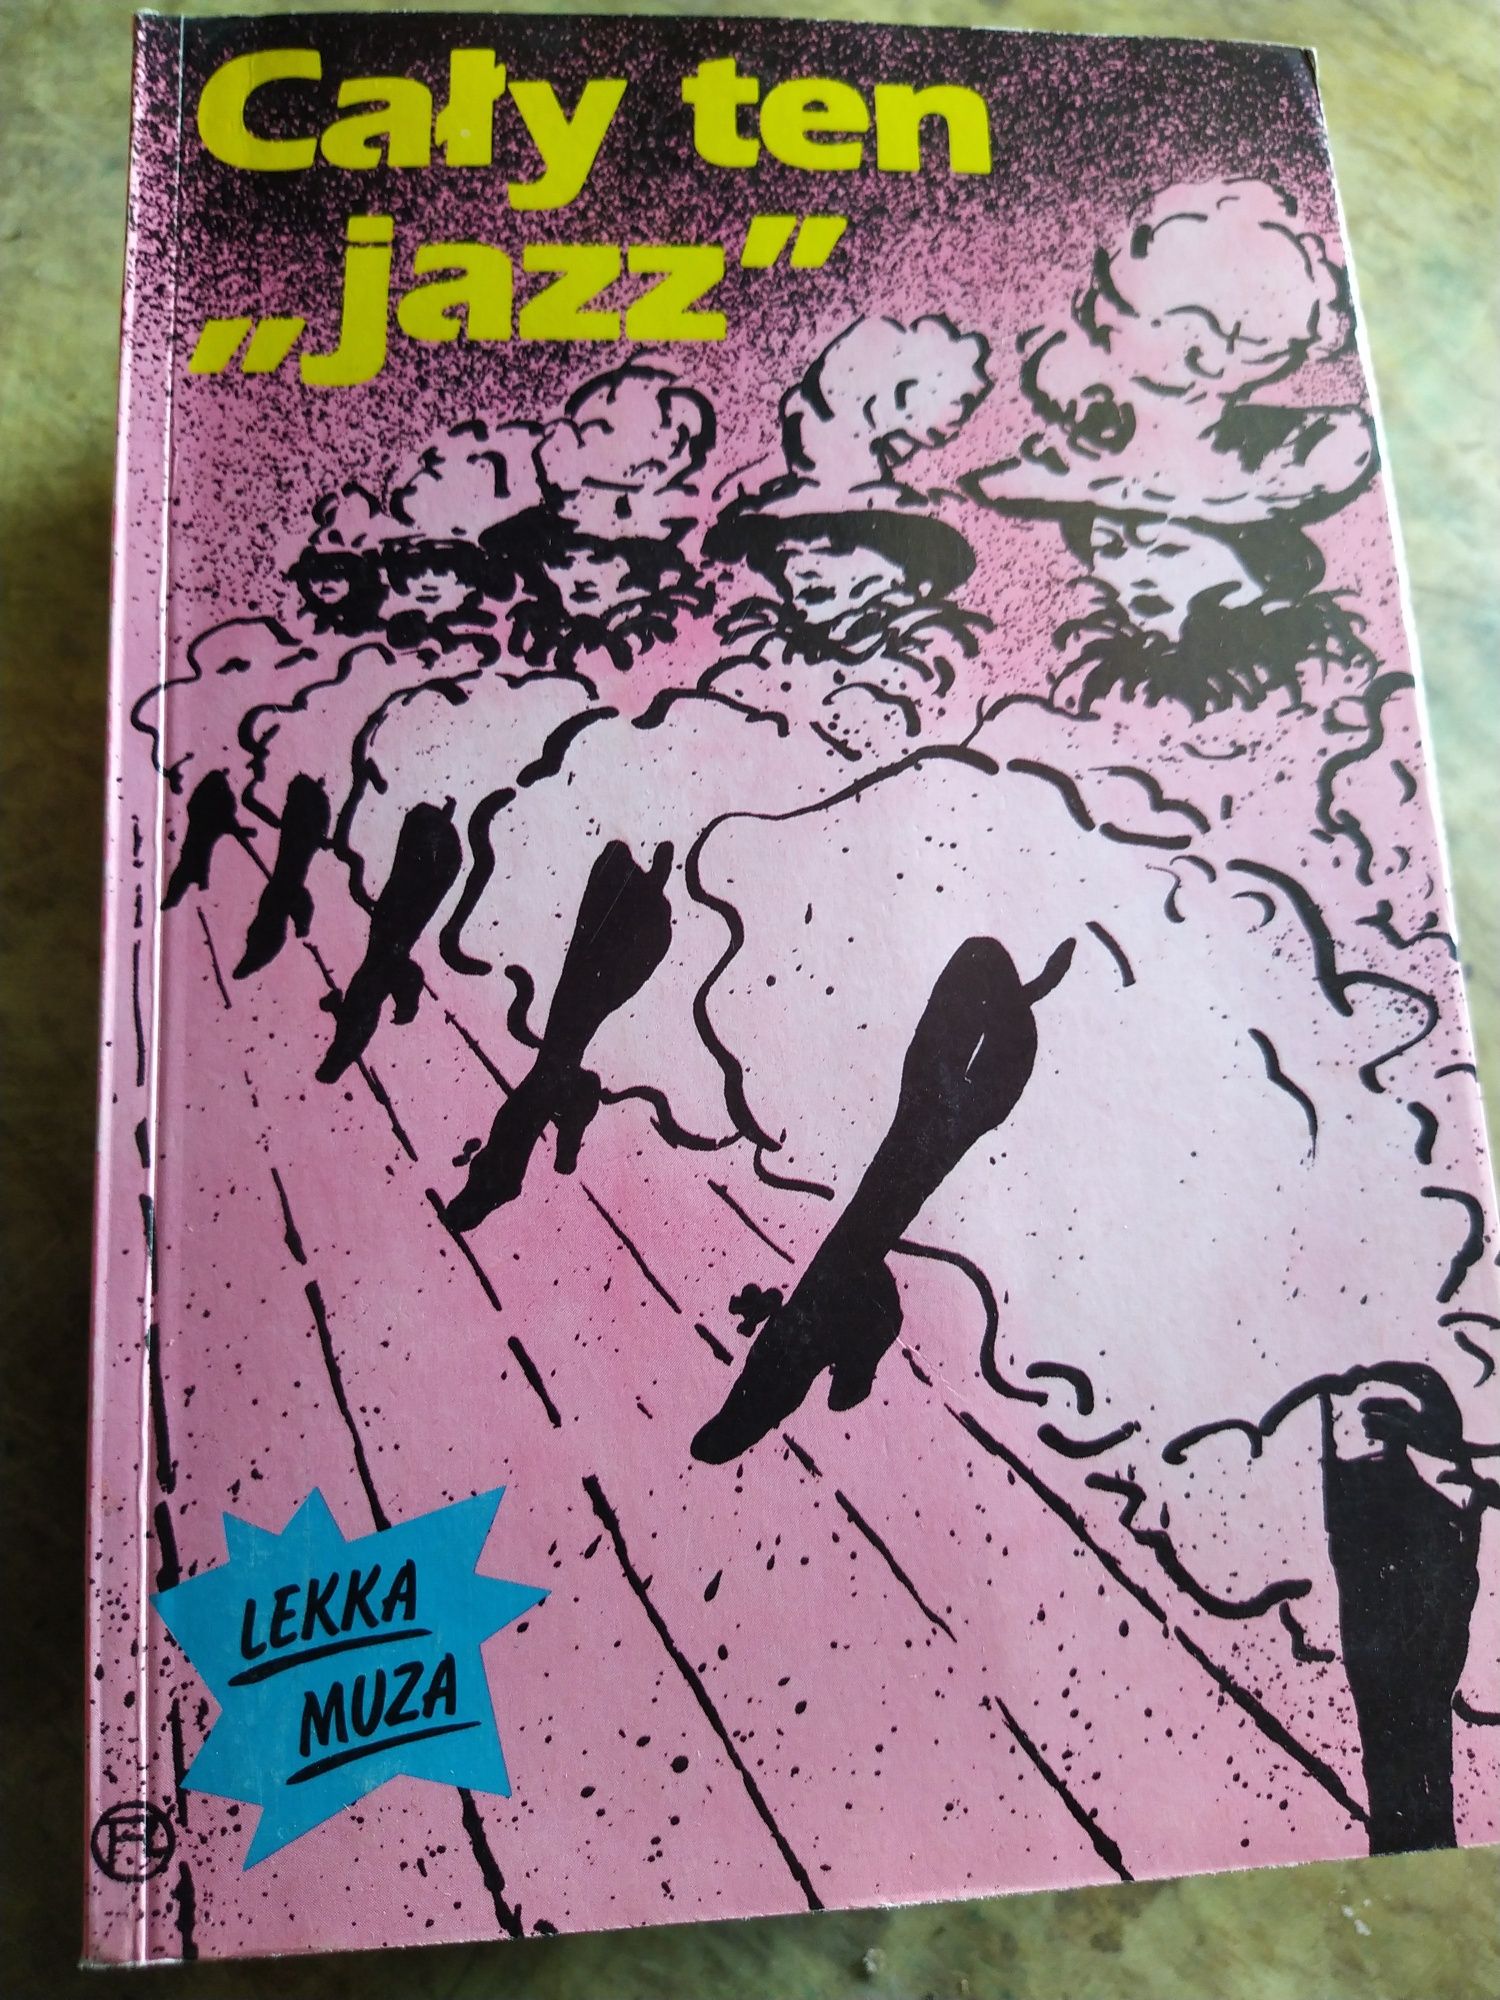 Cały ten "jazz", książka